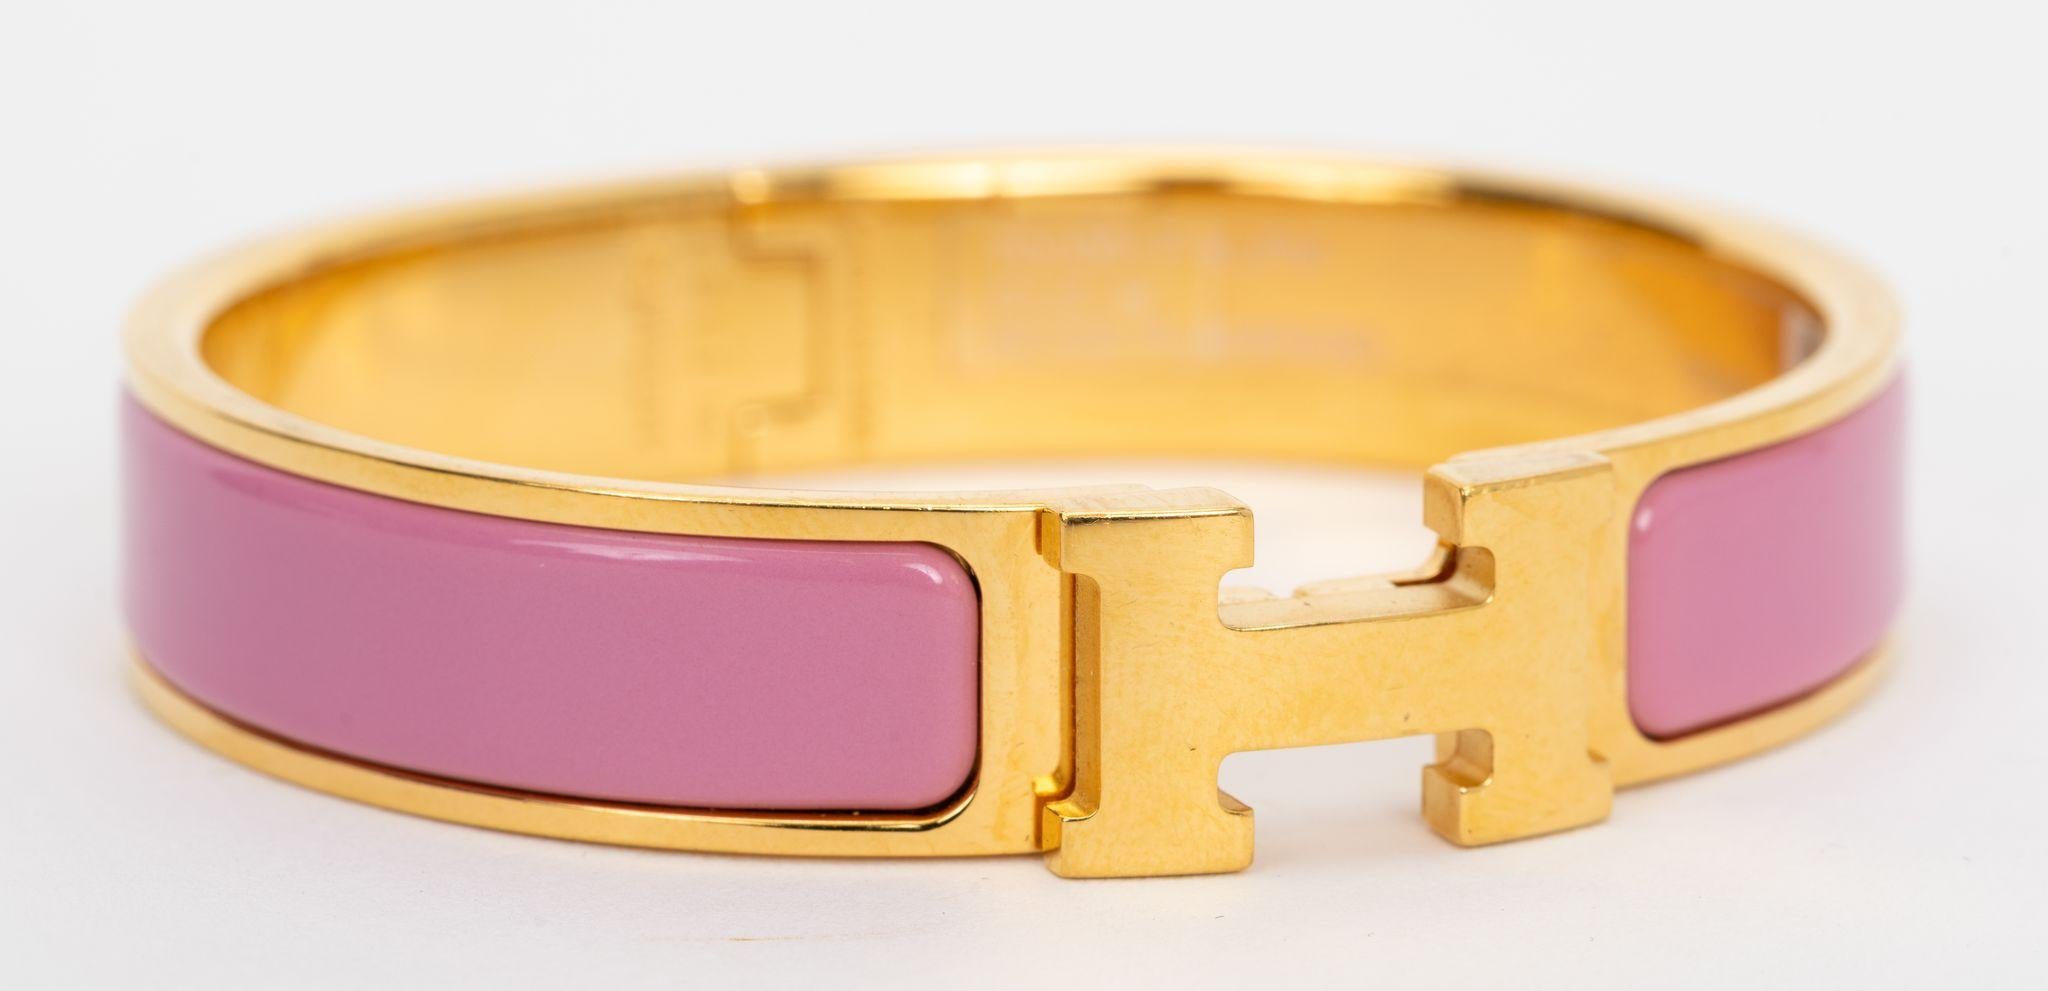 Le bracelet Hermes Clic Clac H, étroit, en émail flamant rose avec des attaches plaquées or.
Taille PM, neuf, non porté, livré avec une pochette en velours.